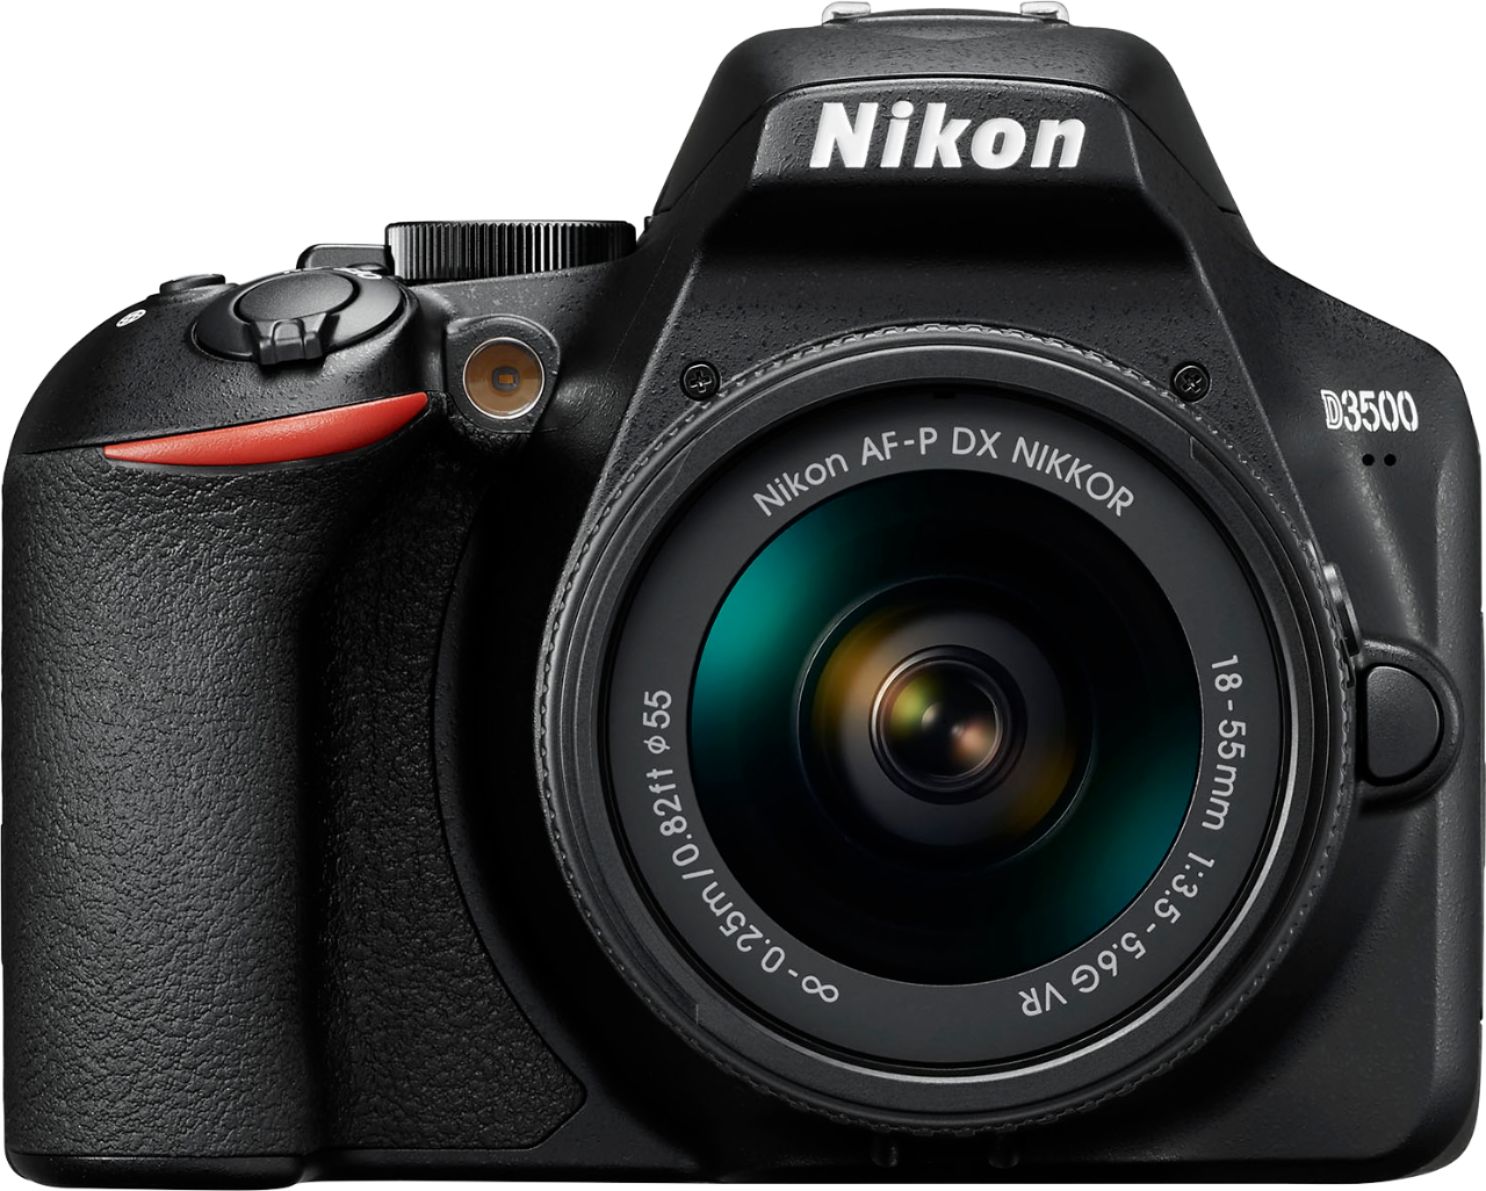 zeker Catastrofe Aanvulling Nikon D3500 DSLR Video Camera with AF-P DX NIKKOR 18-55mm f/3.5-5.6G VR  Lens Black 1590 - Best Buy